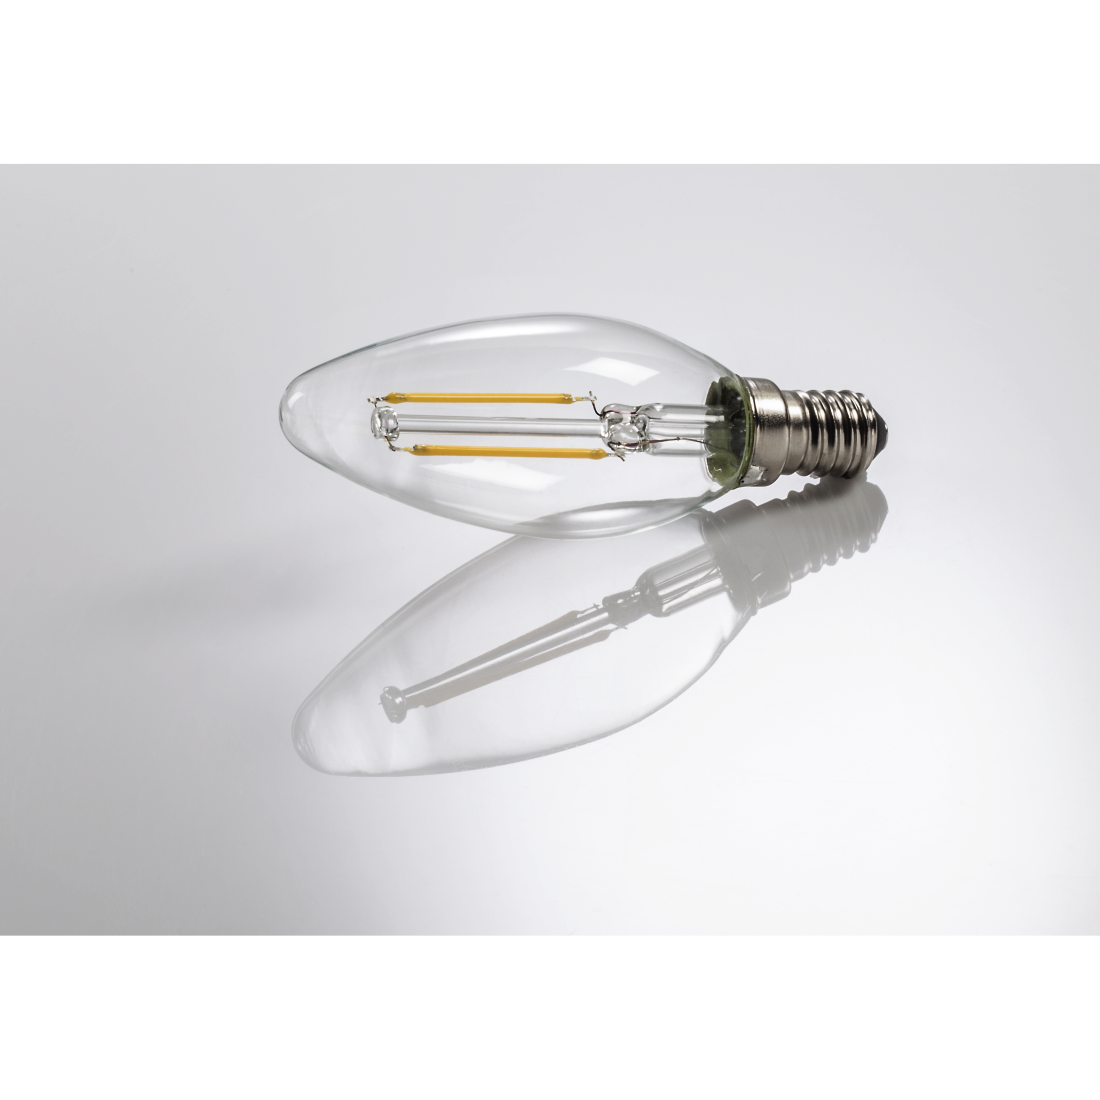 abx3 High-Res Image 3 - Xavax, Ampoule filament LED, E14, 250lm rempl. ampoule bougie 25W, blc chaud